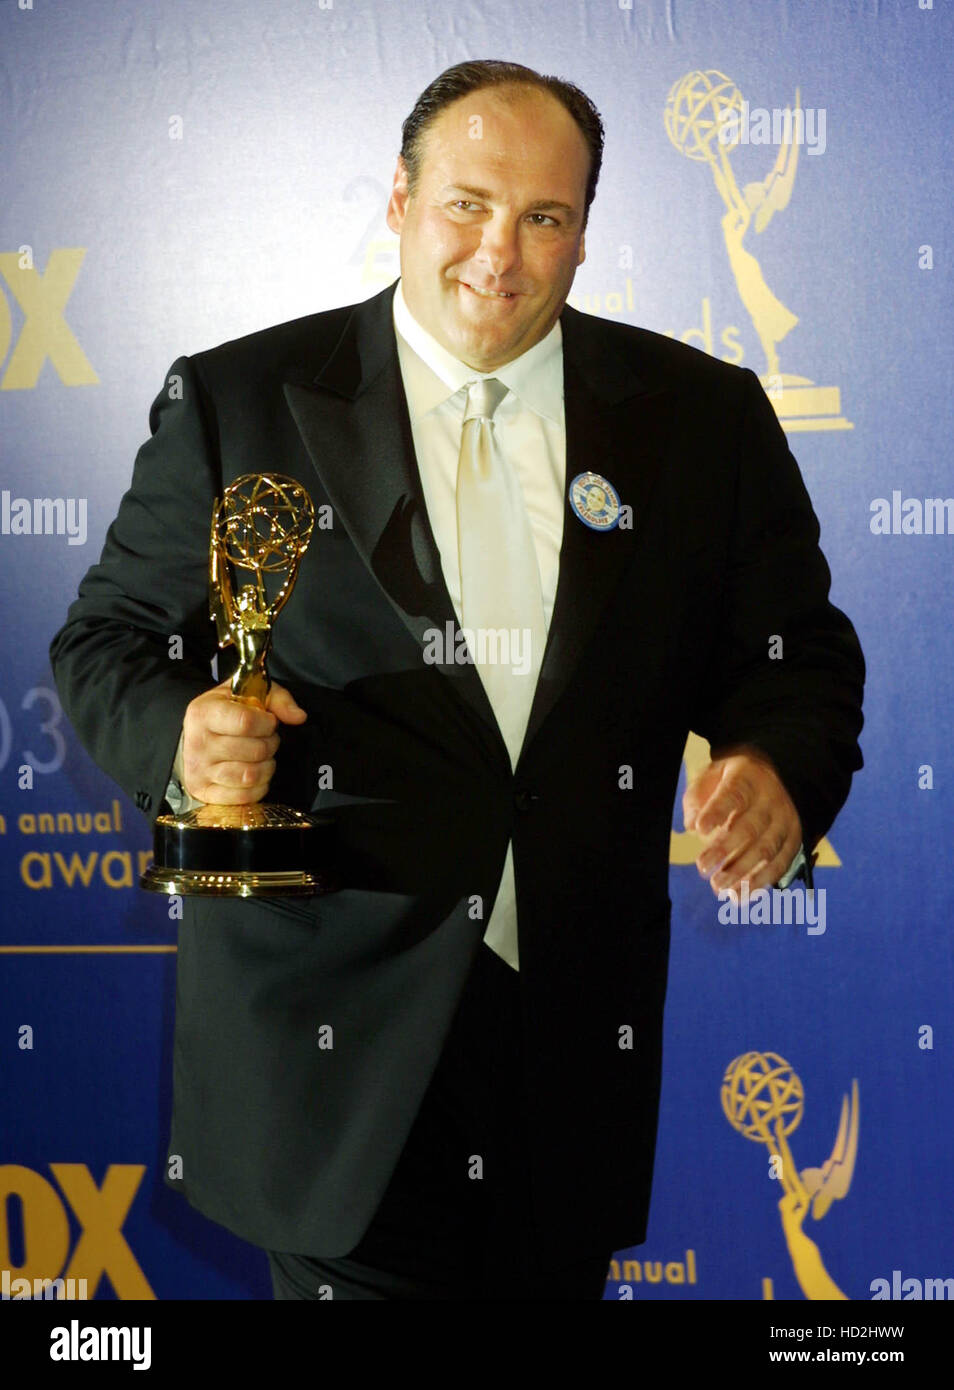 L'attore James Gandolfini tiene il suo premio per il miglior attore protagonista in una serie di dramma, 'i soprani' alla 55th annuale di Primetime Emmy Awards tenutosi presso lo Shrine Auditorium di Los Angeles il Domenica, 21 settembre 2003. Francesco Specker Foto Stock